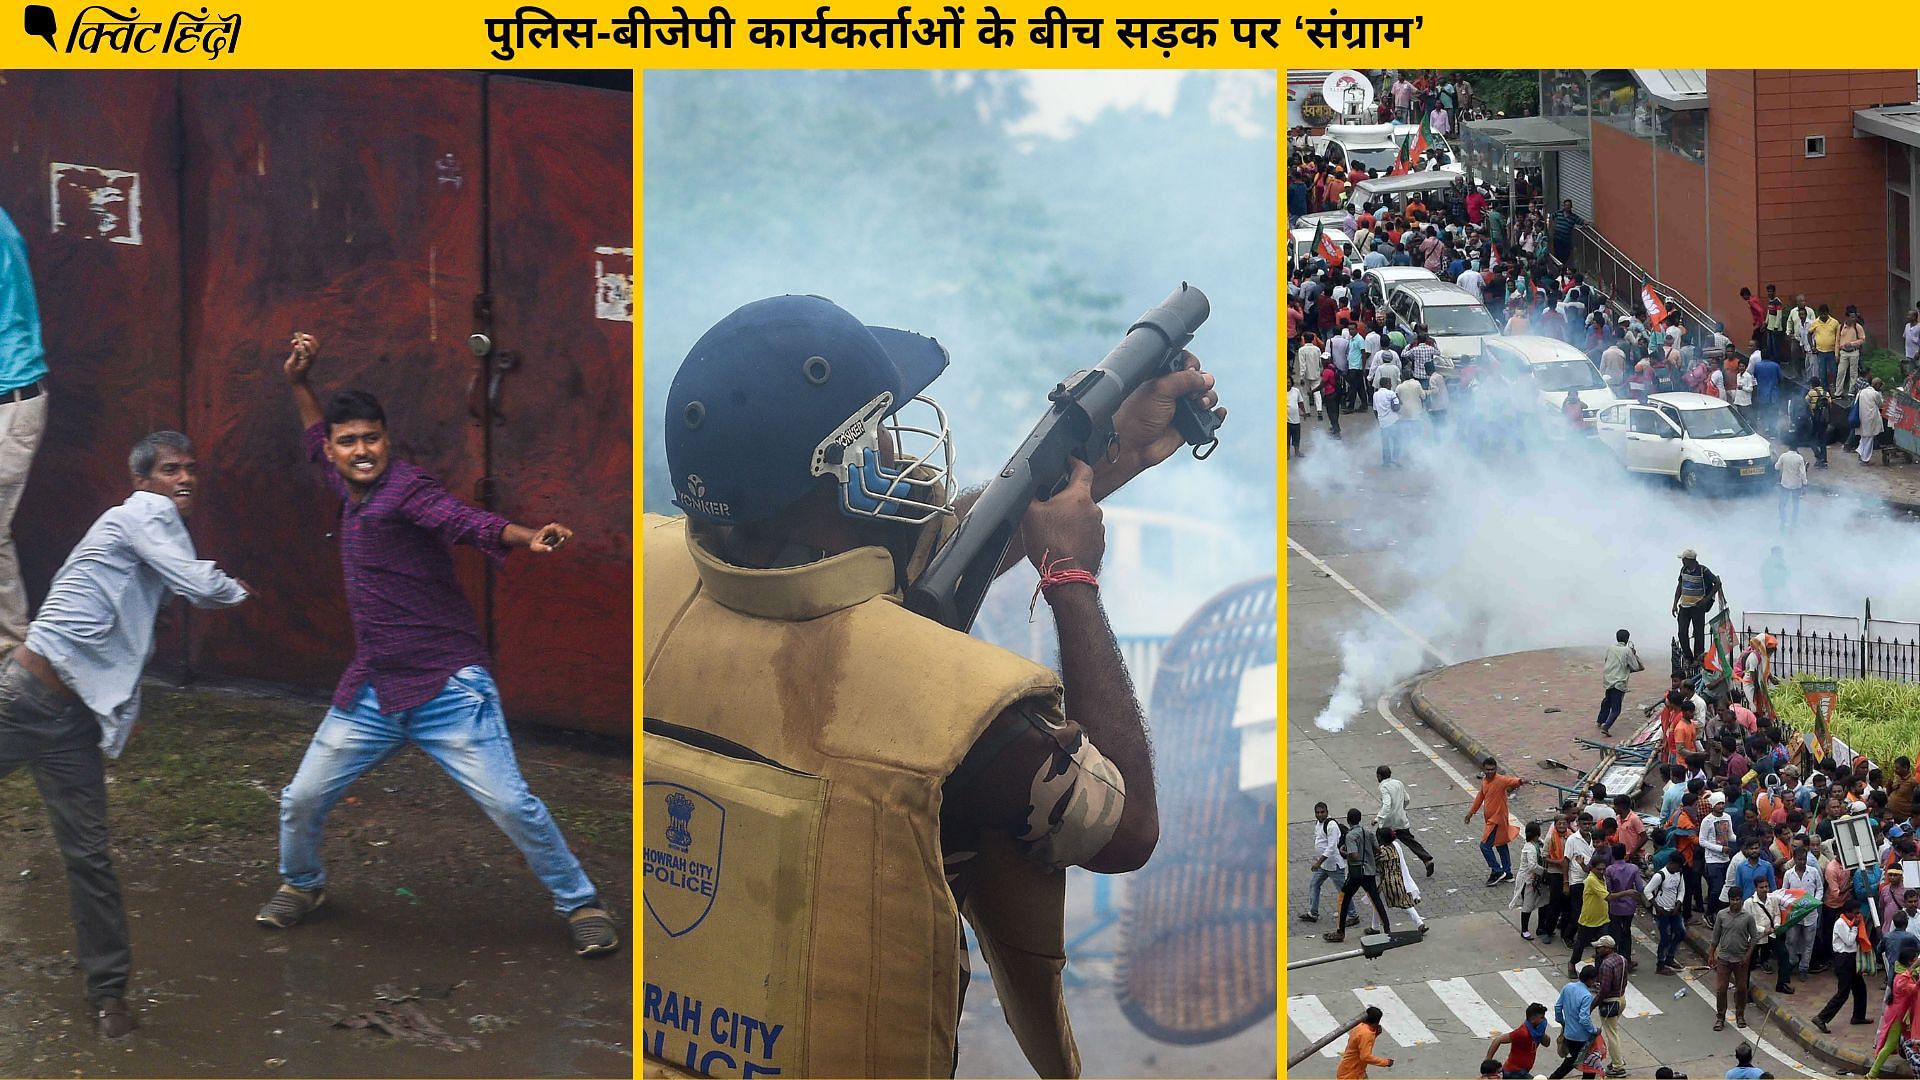 <div class="paragraphs"><p>कोलकाता में बीजेपी का प्रदर्शनः पुलिस की गाड़ी में आग, पत्थरबाजी और हिंसा की 10 तस्वीरें</p></div>